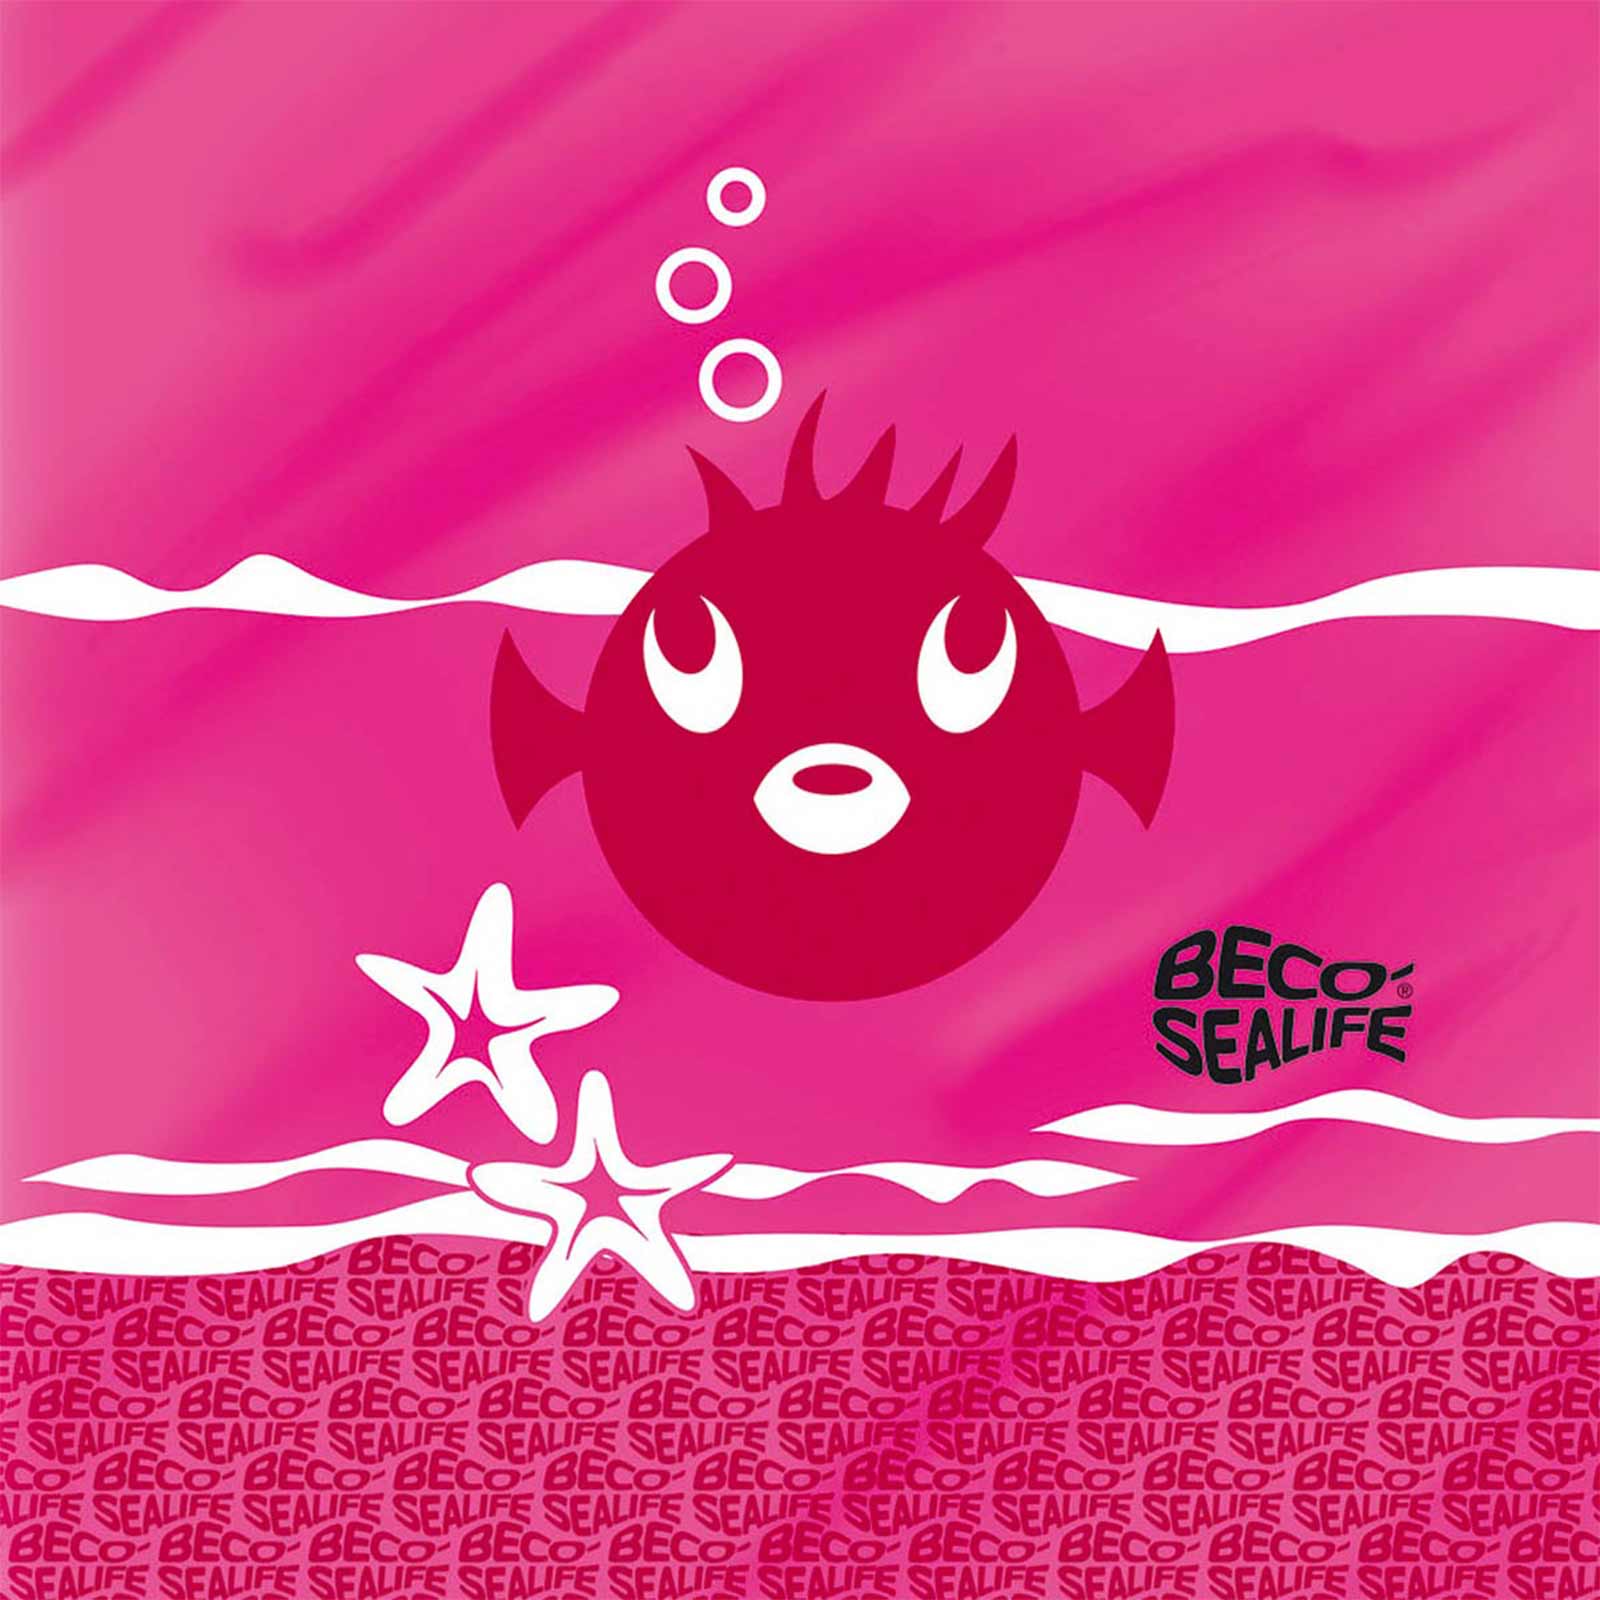 Beco Sealife Schwimmbeutel Pink Produktbild Detail